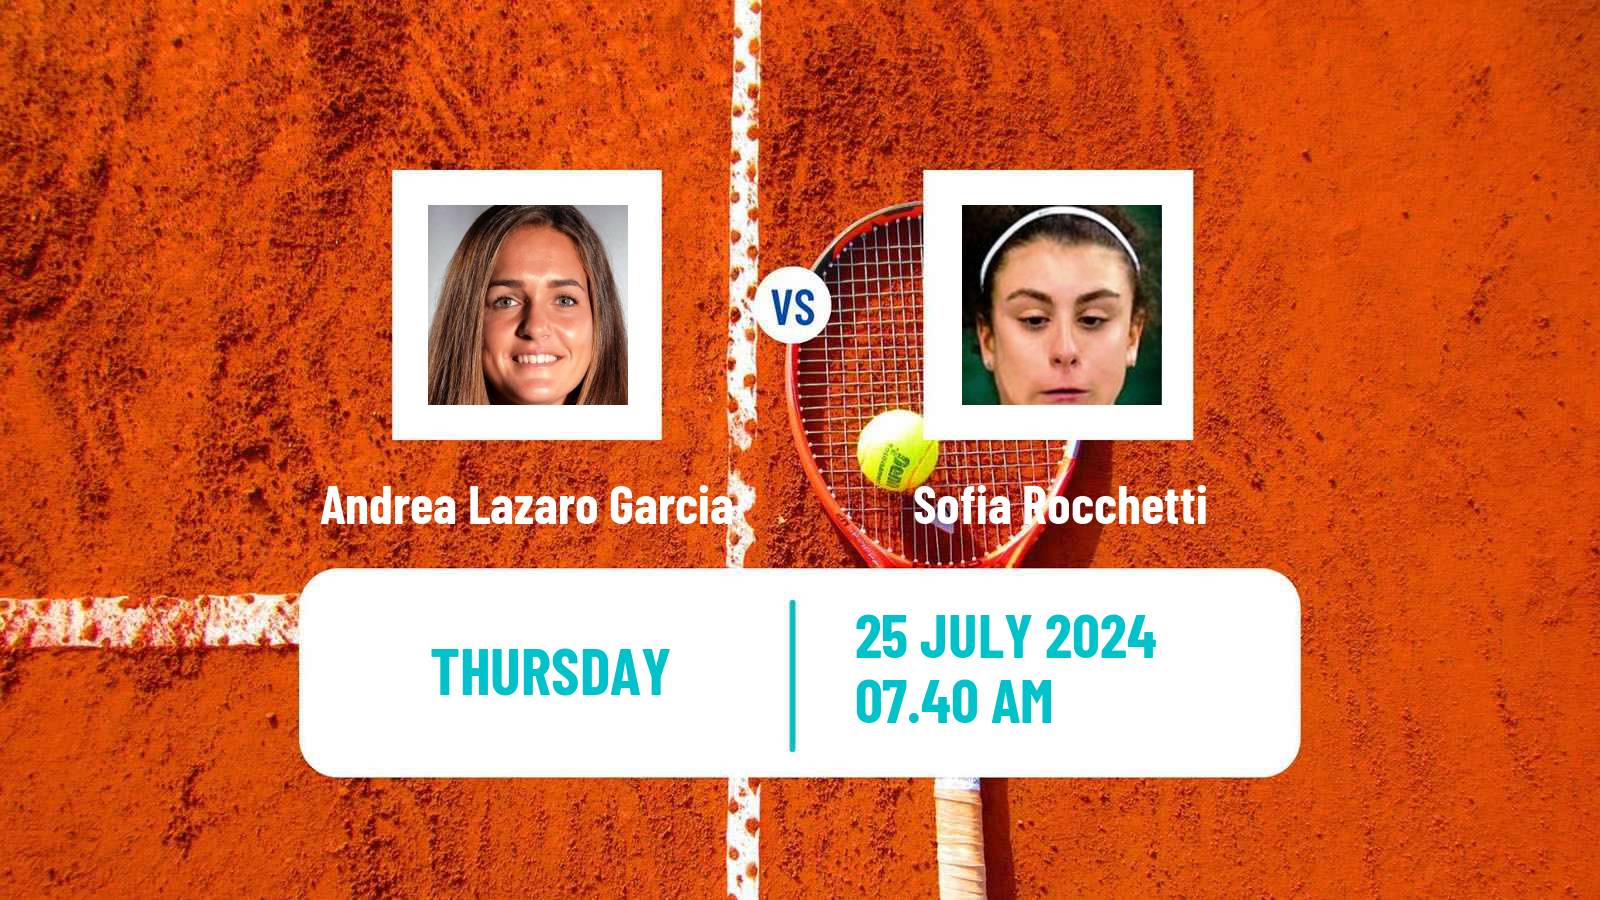 Tennis ITF W35 Casablanca Women Andrea Lazaro Garcia - Sofia Rocchetti